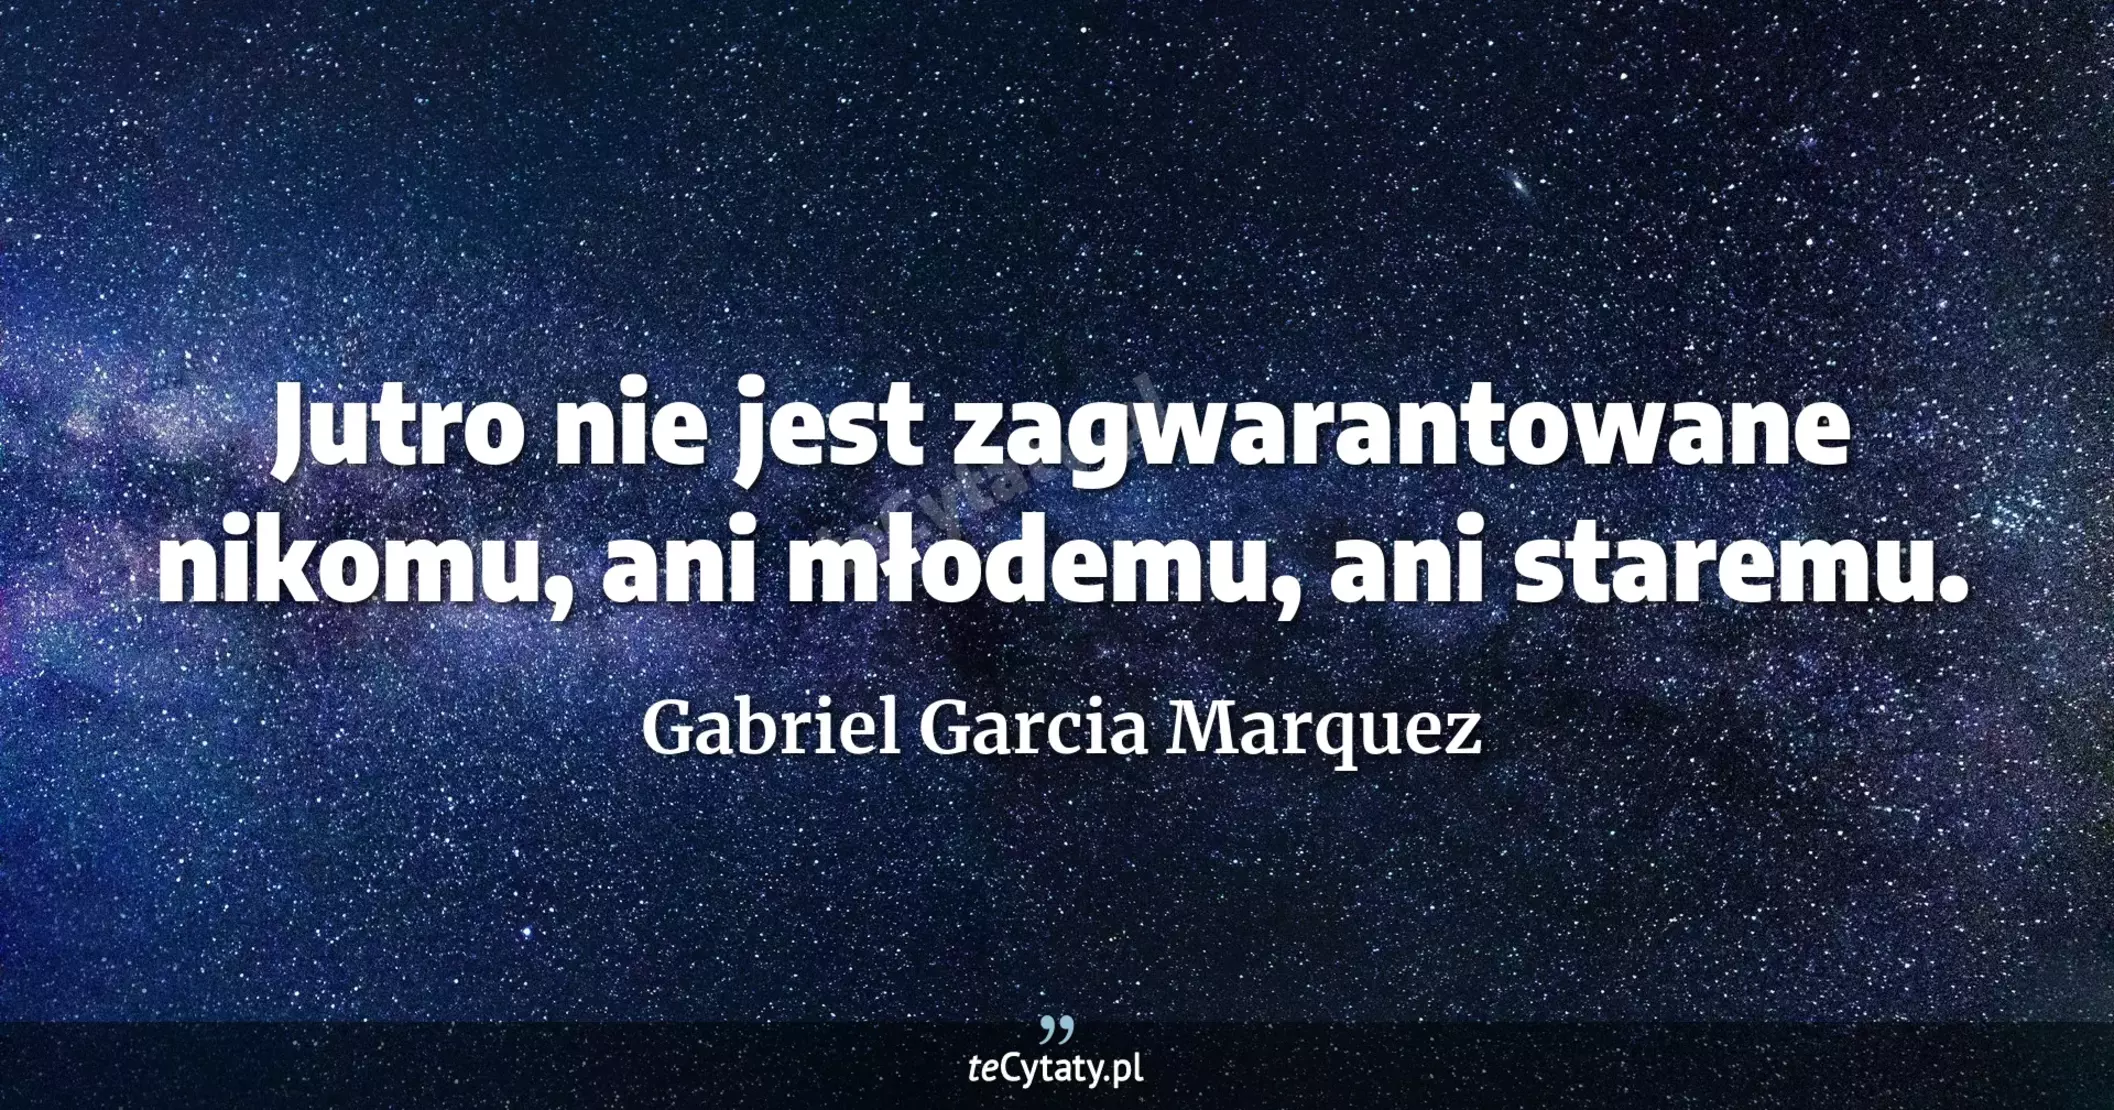 Jutro nie jest zagwarantowane nikomu, ani młodemu, ani staremu. - Gabriel Garcia Marquez